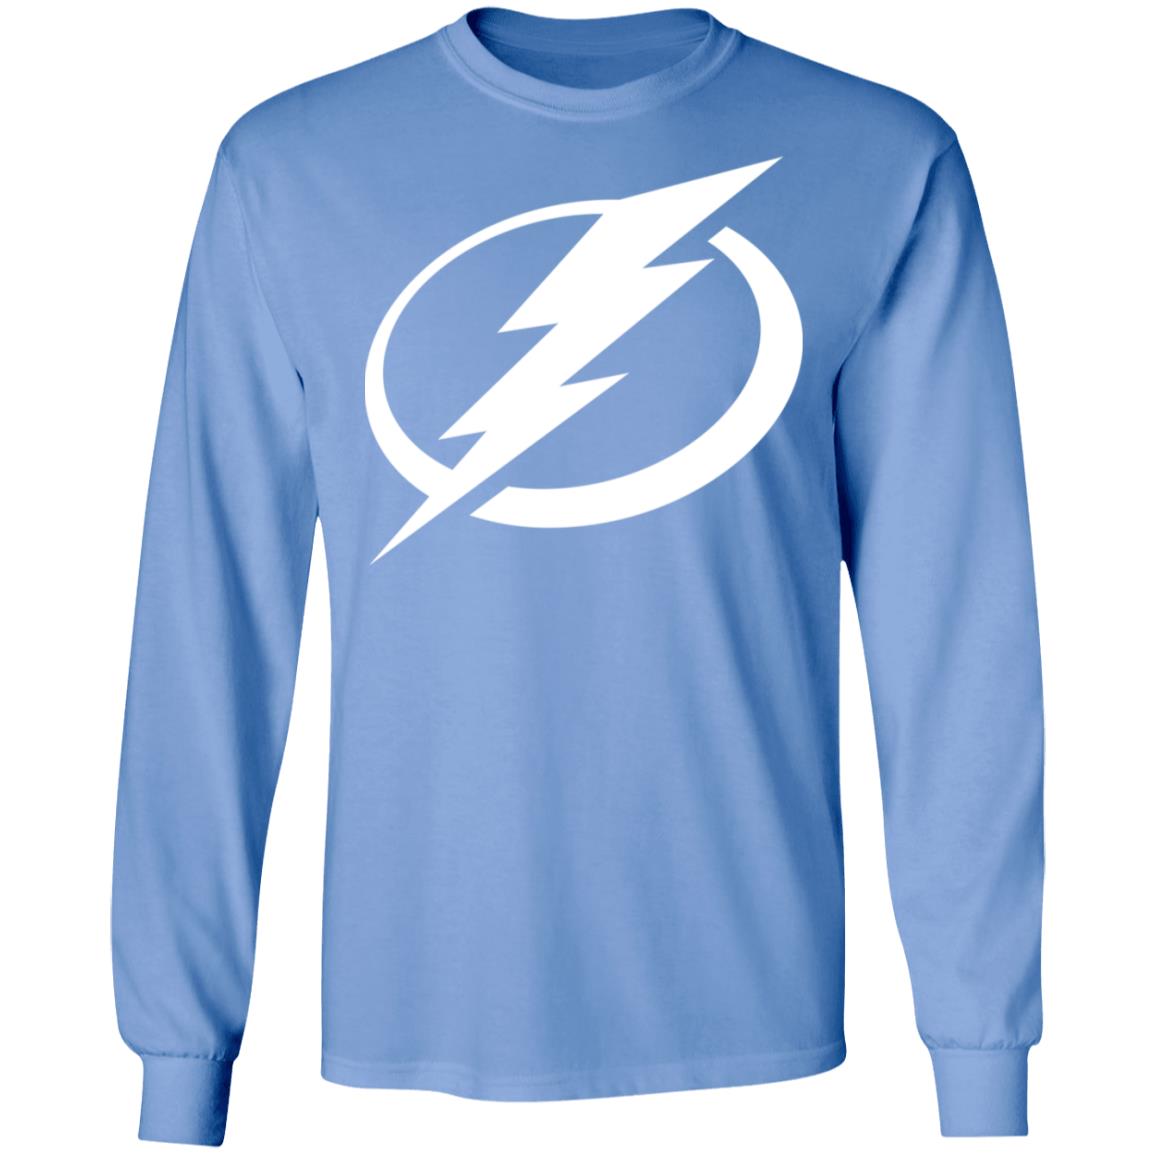 Tampa Bay Lightning Shirt, T-Shirt, Hoodie, Tank Top, Sweatshirt